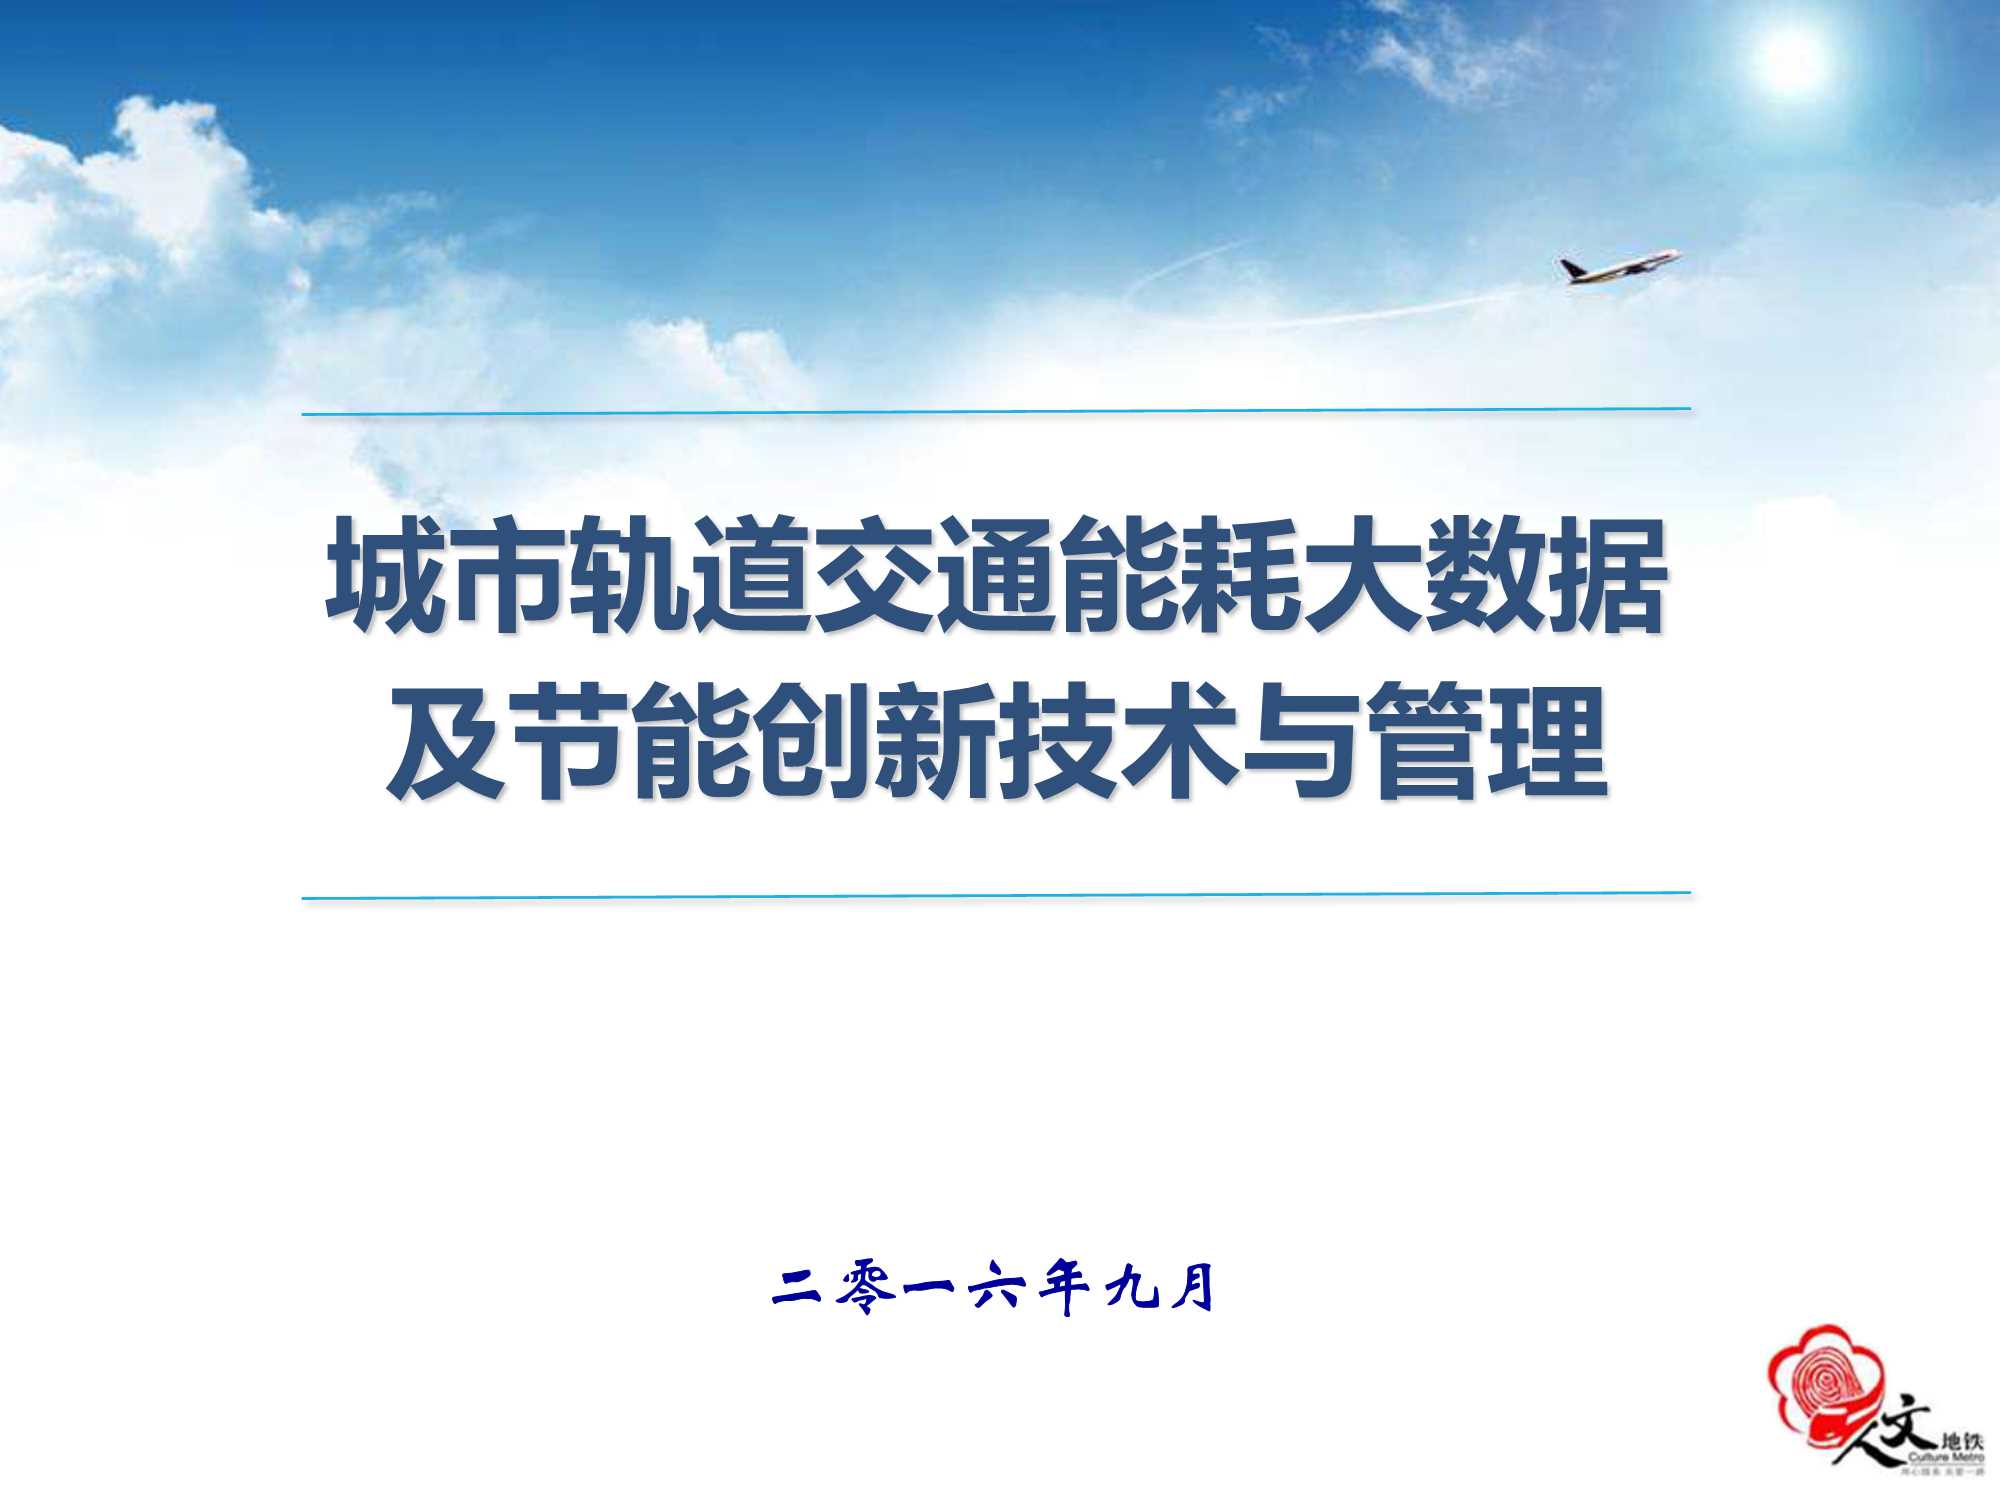 何志康-能耗大数据及地铁创新节能技术与管理-南京地铁-2016.09-67页